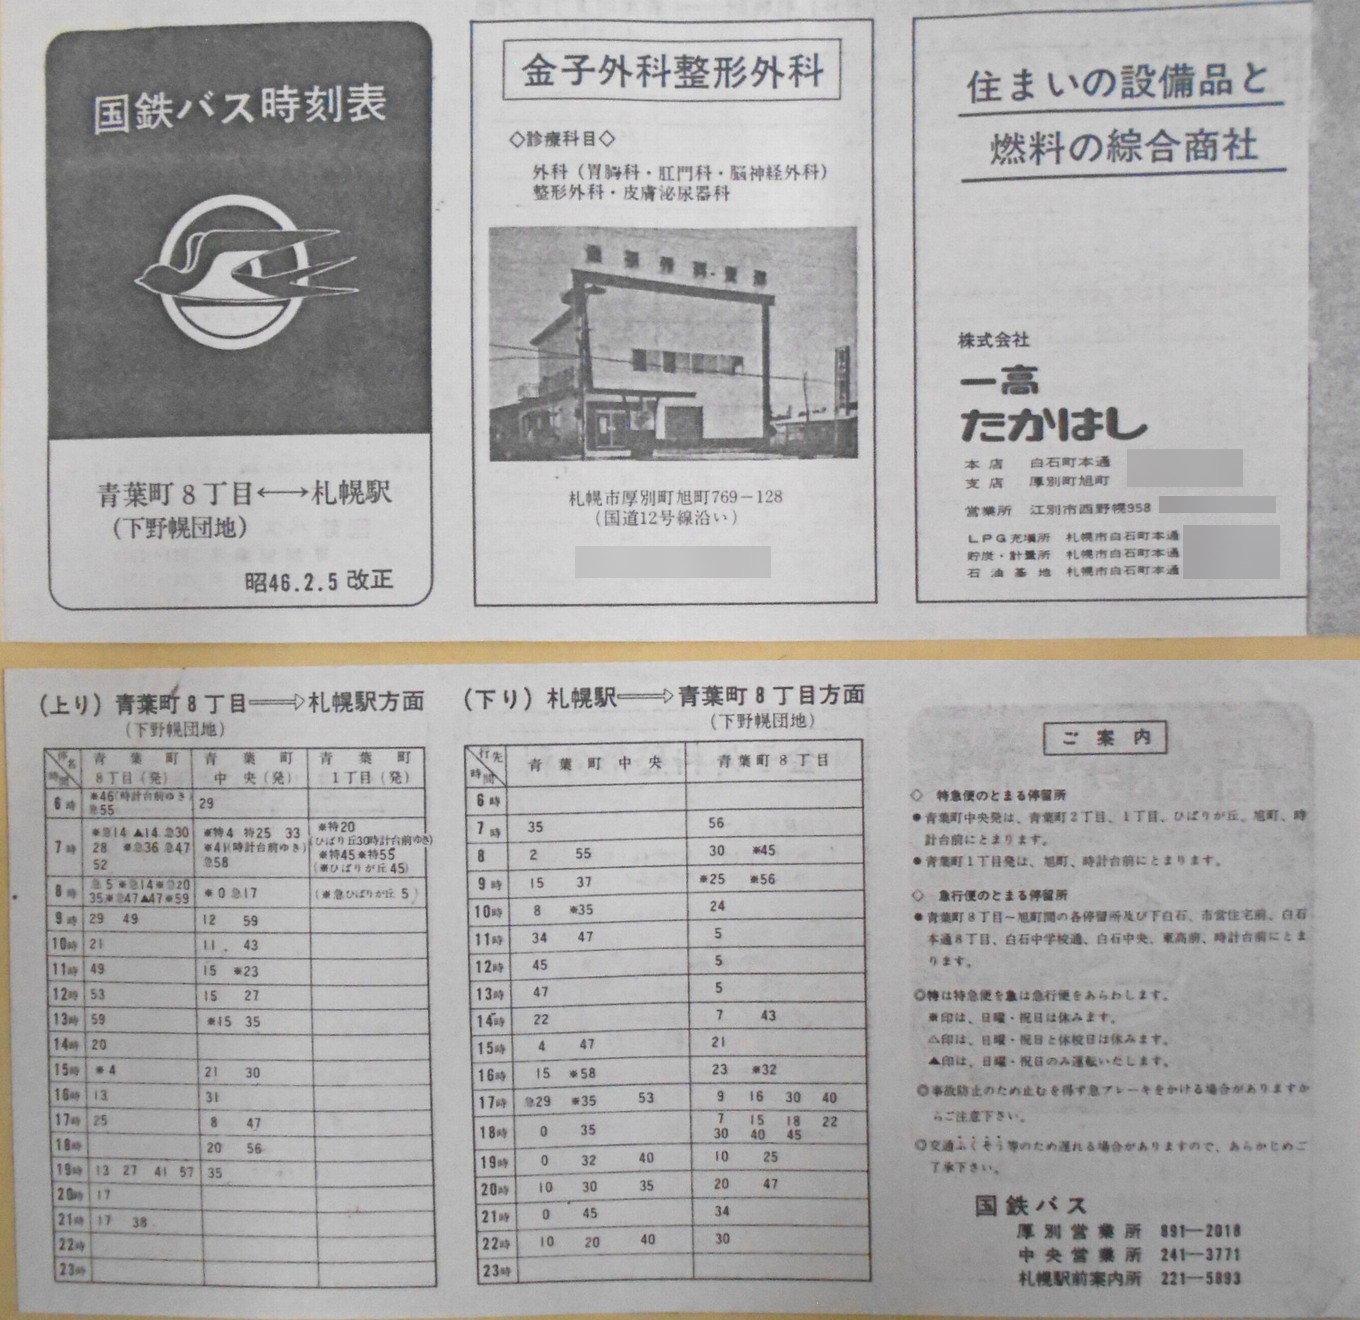 1971-02-05改正_国鉄バス_空知線青葉町方向時刻表